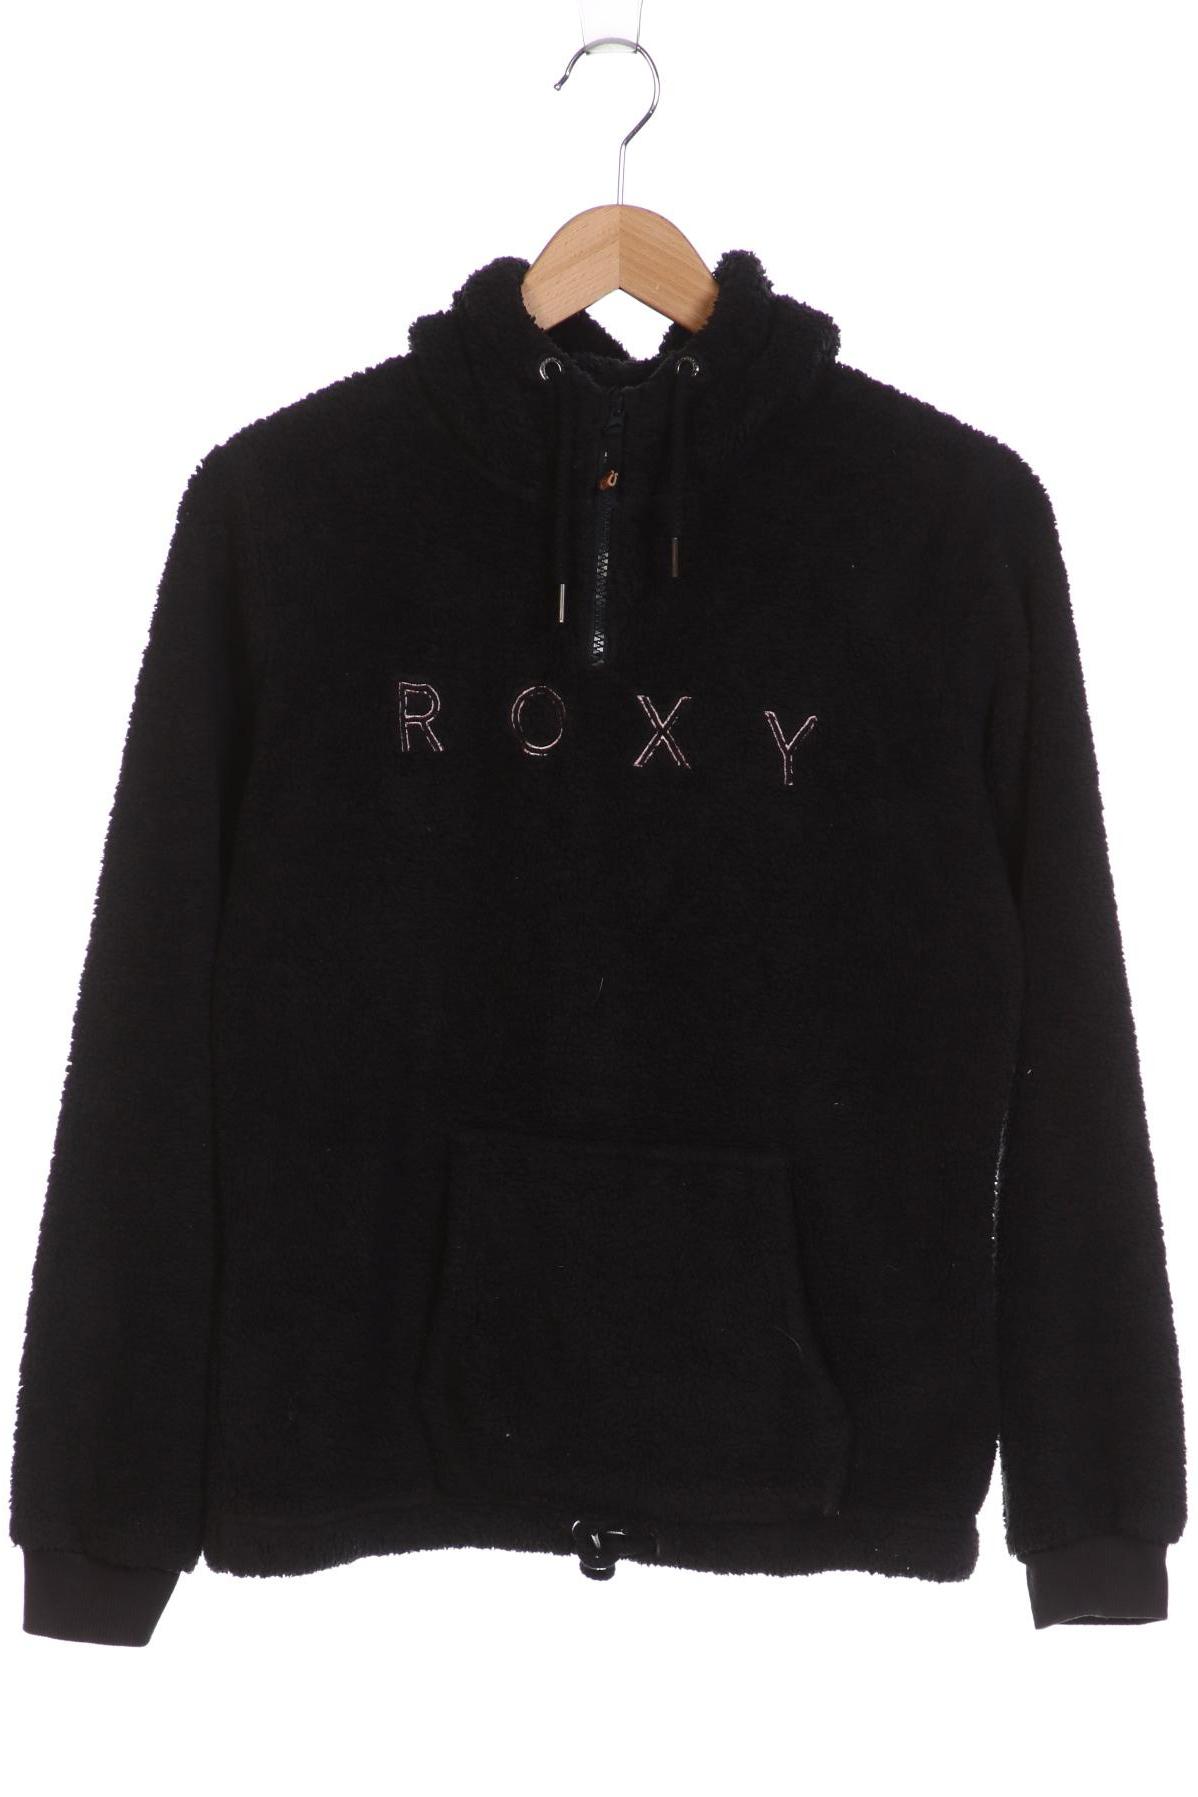 Roxy Damen Kapuzenpullover, schwarz von Roxy